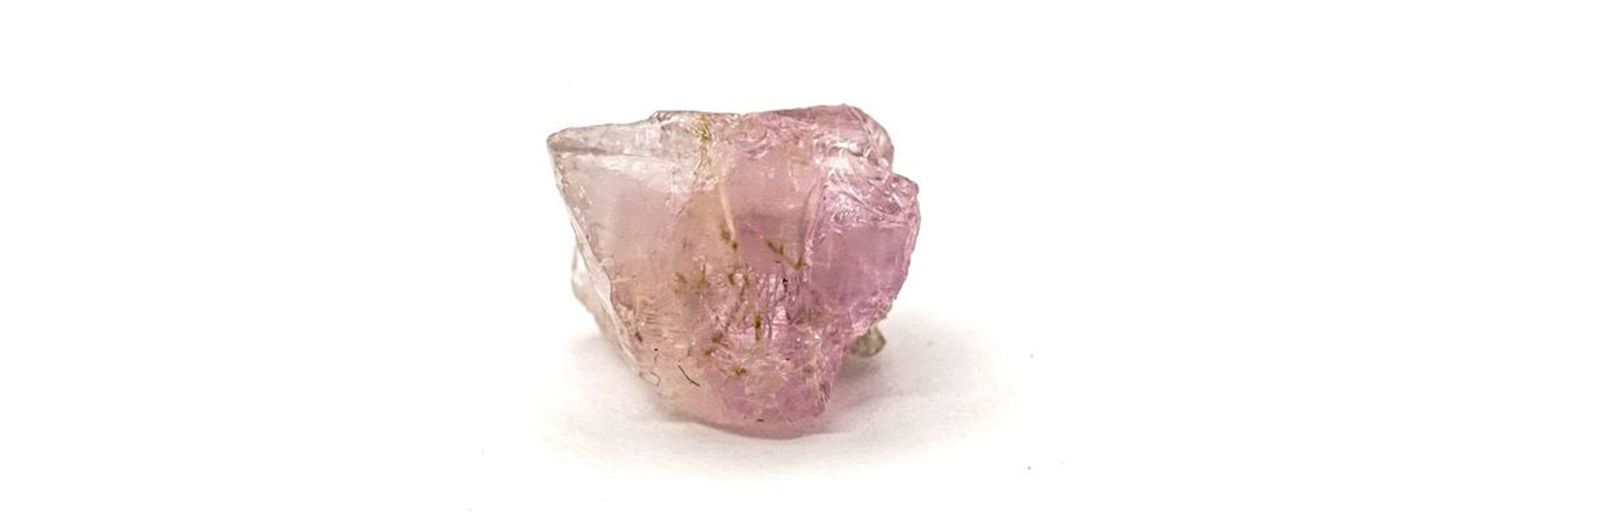 ピンクカラーの新しい宝石、ポードレッタイトについて解説 | TOP STONE 